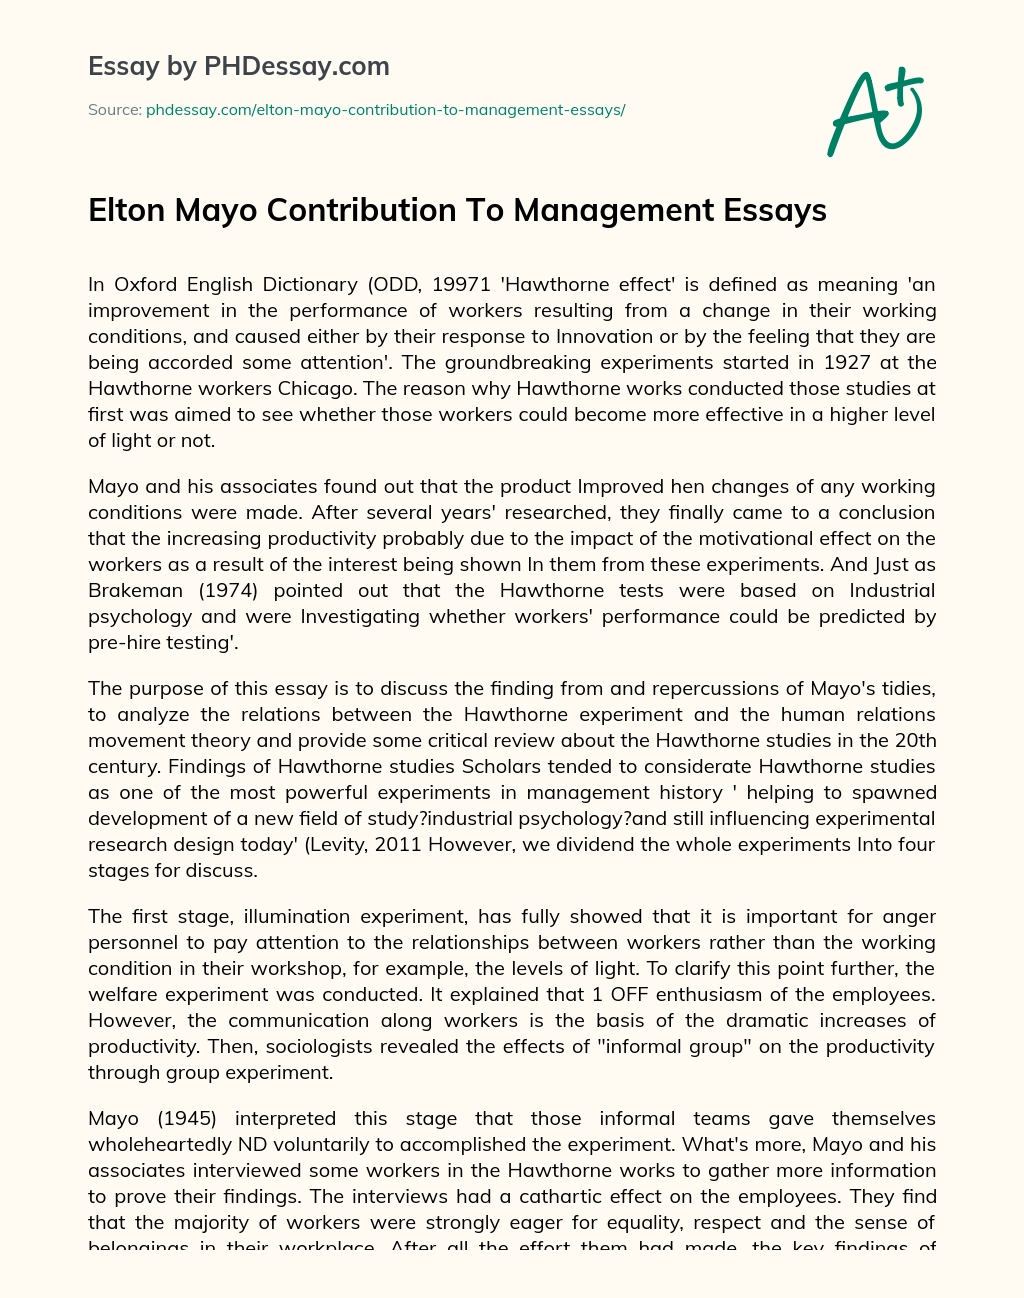 Elton Mayo Contribution To Management Essays essay